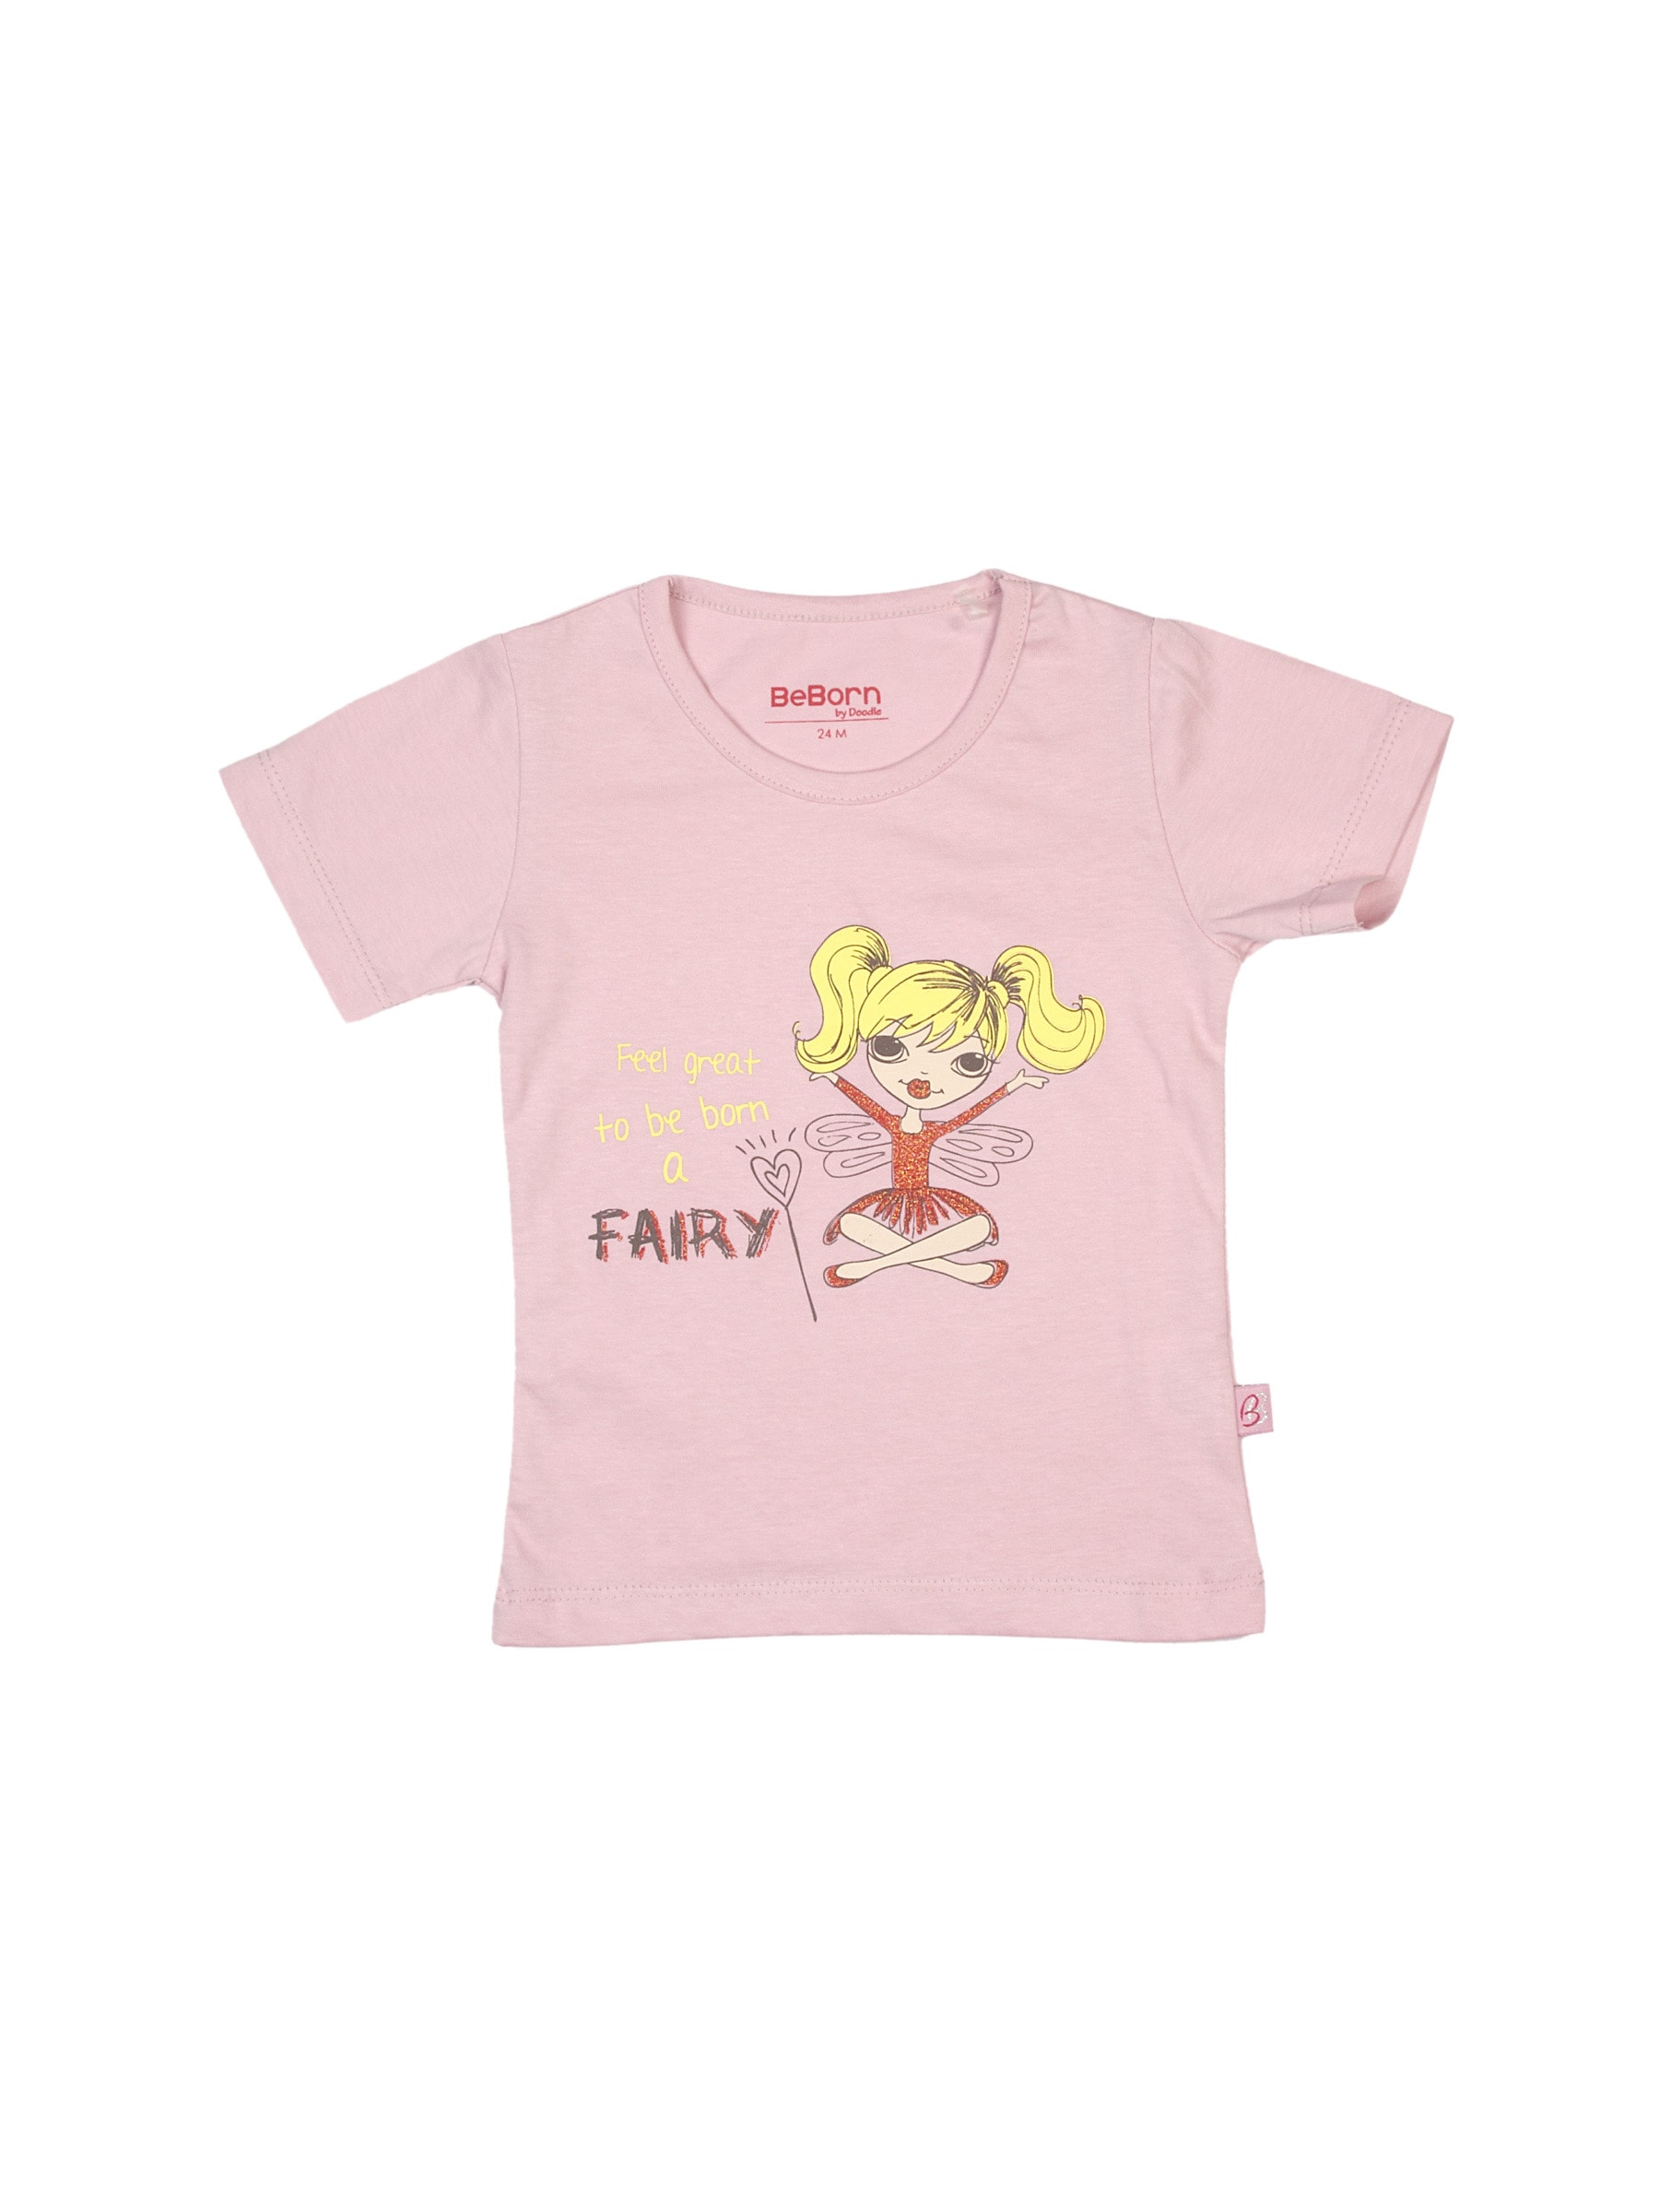 Doodle  Fairy Girl Pink Tshirt